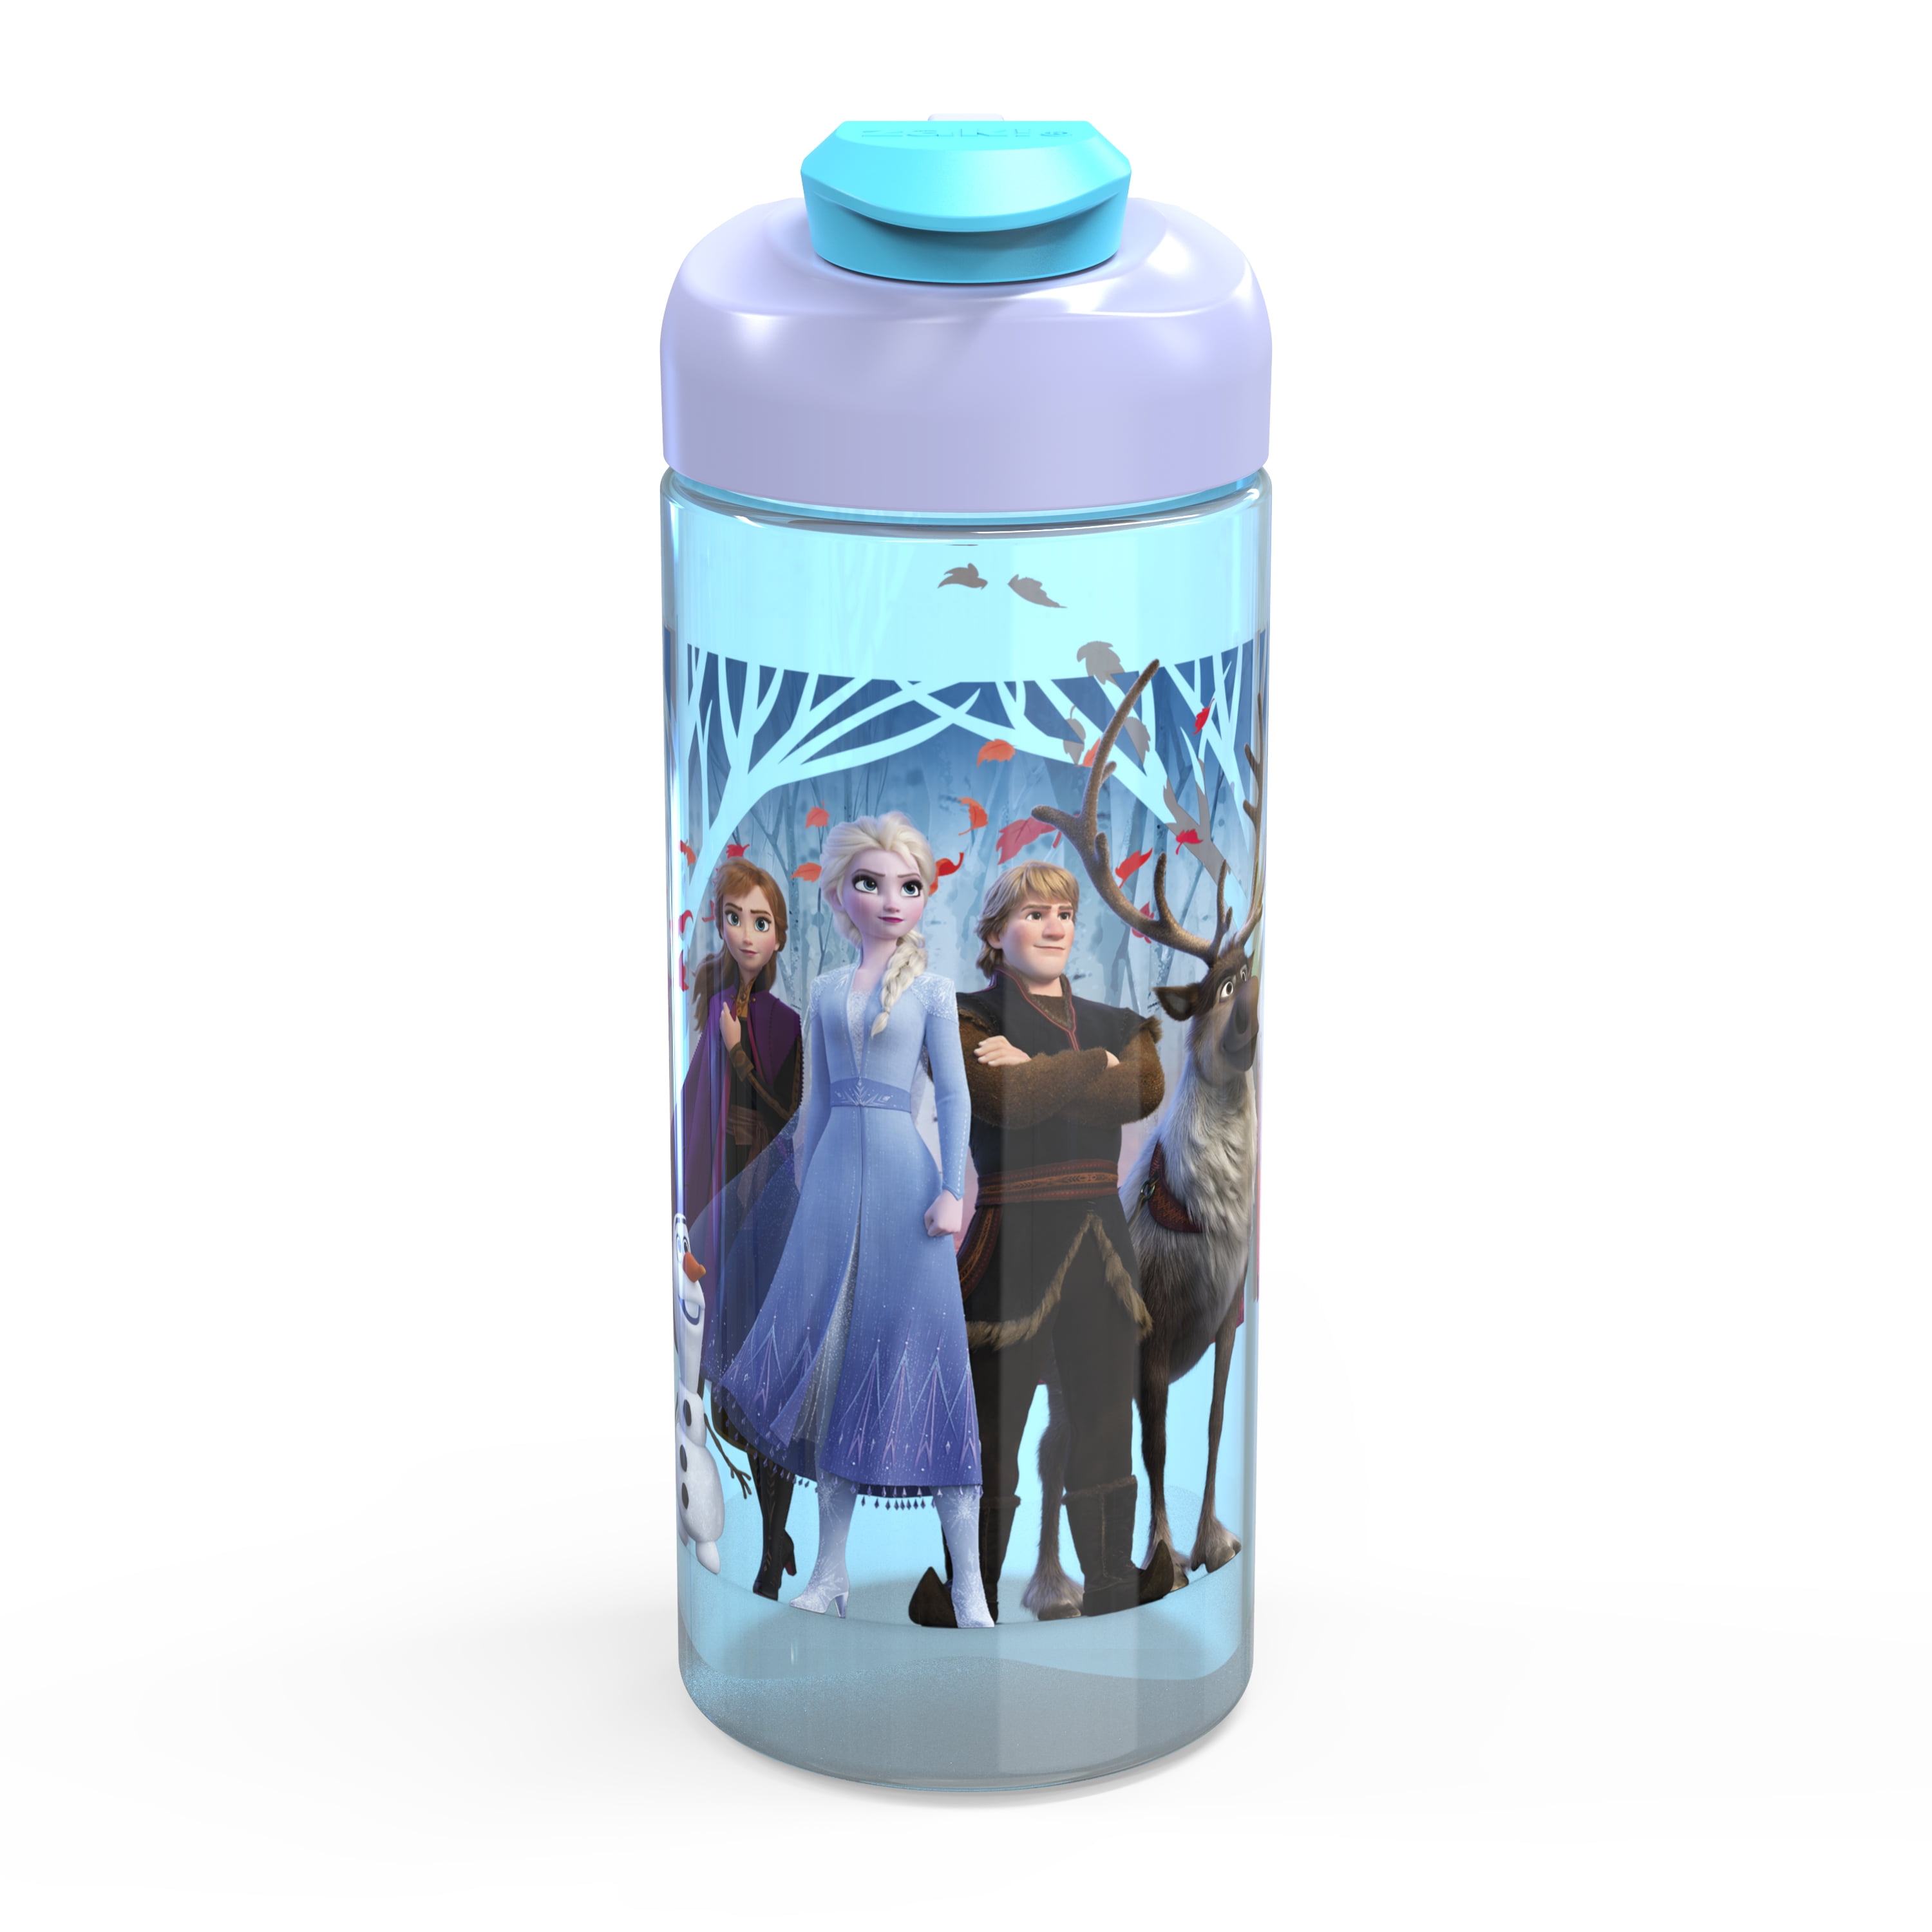 New Disney Store Frozen Fever Elsa Anna Plastic Snack Drink Bottle BPA Free 